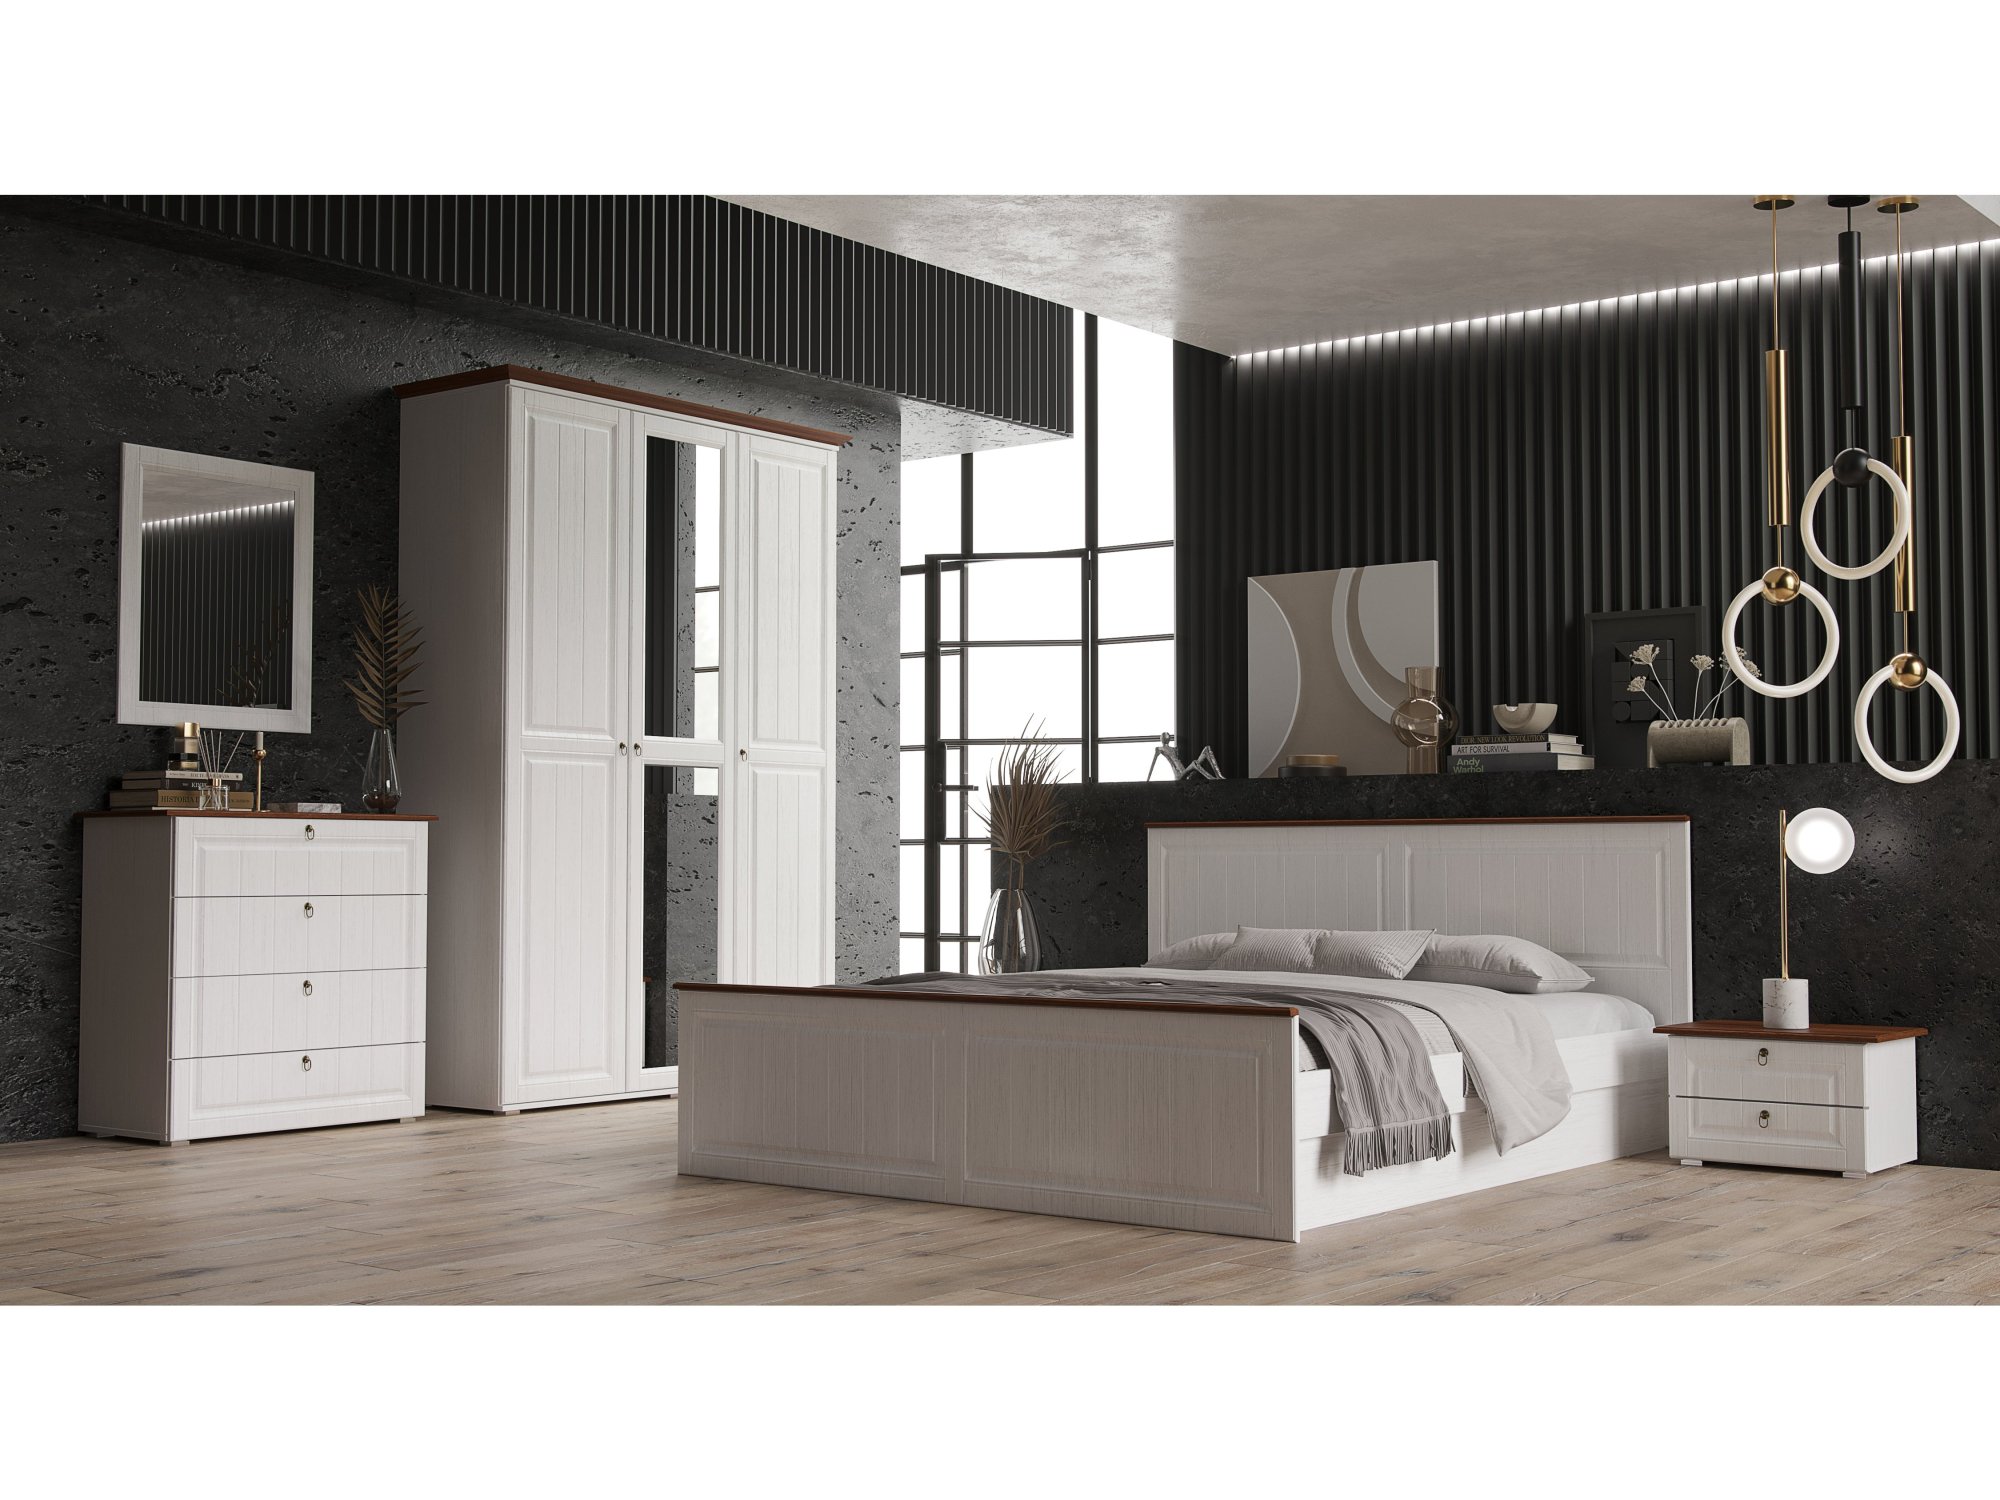 Модульная спальня Валенсия (Белый матовый / Орех) Белый, Коричневый, МДФ, ЛДСП модульная спальня магнолия орех коричневый лдсп